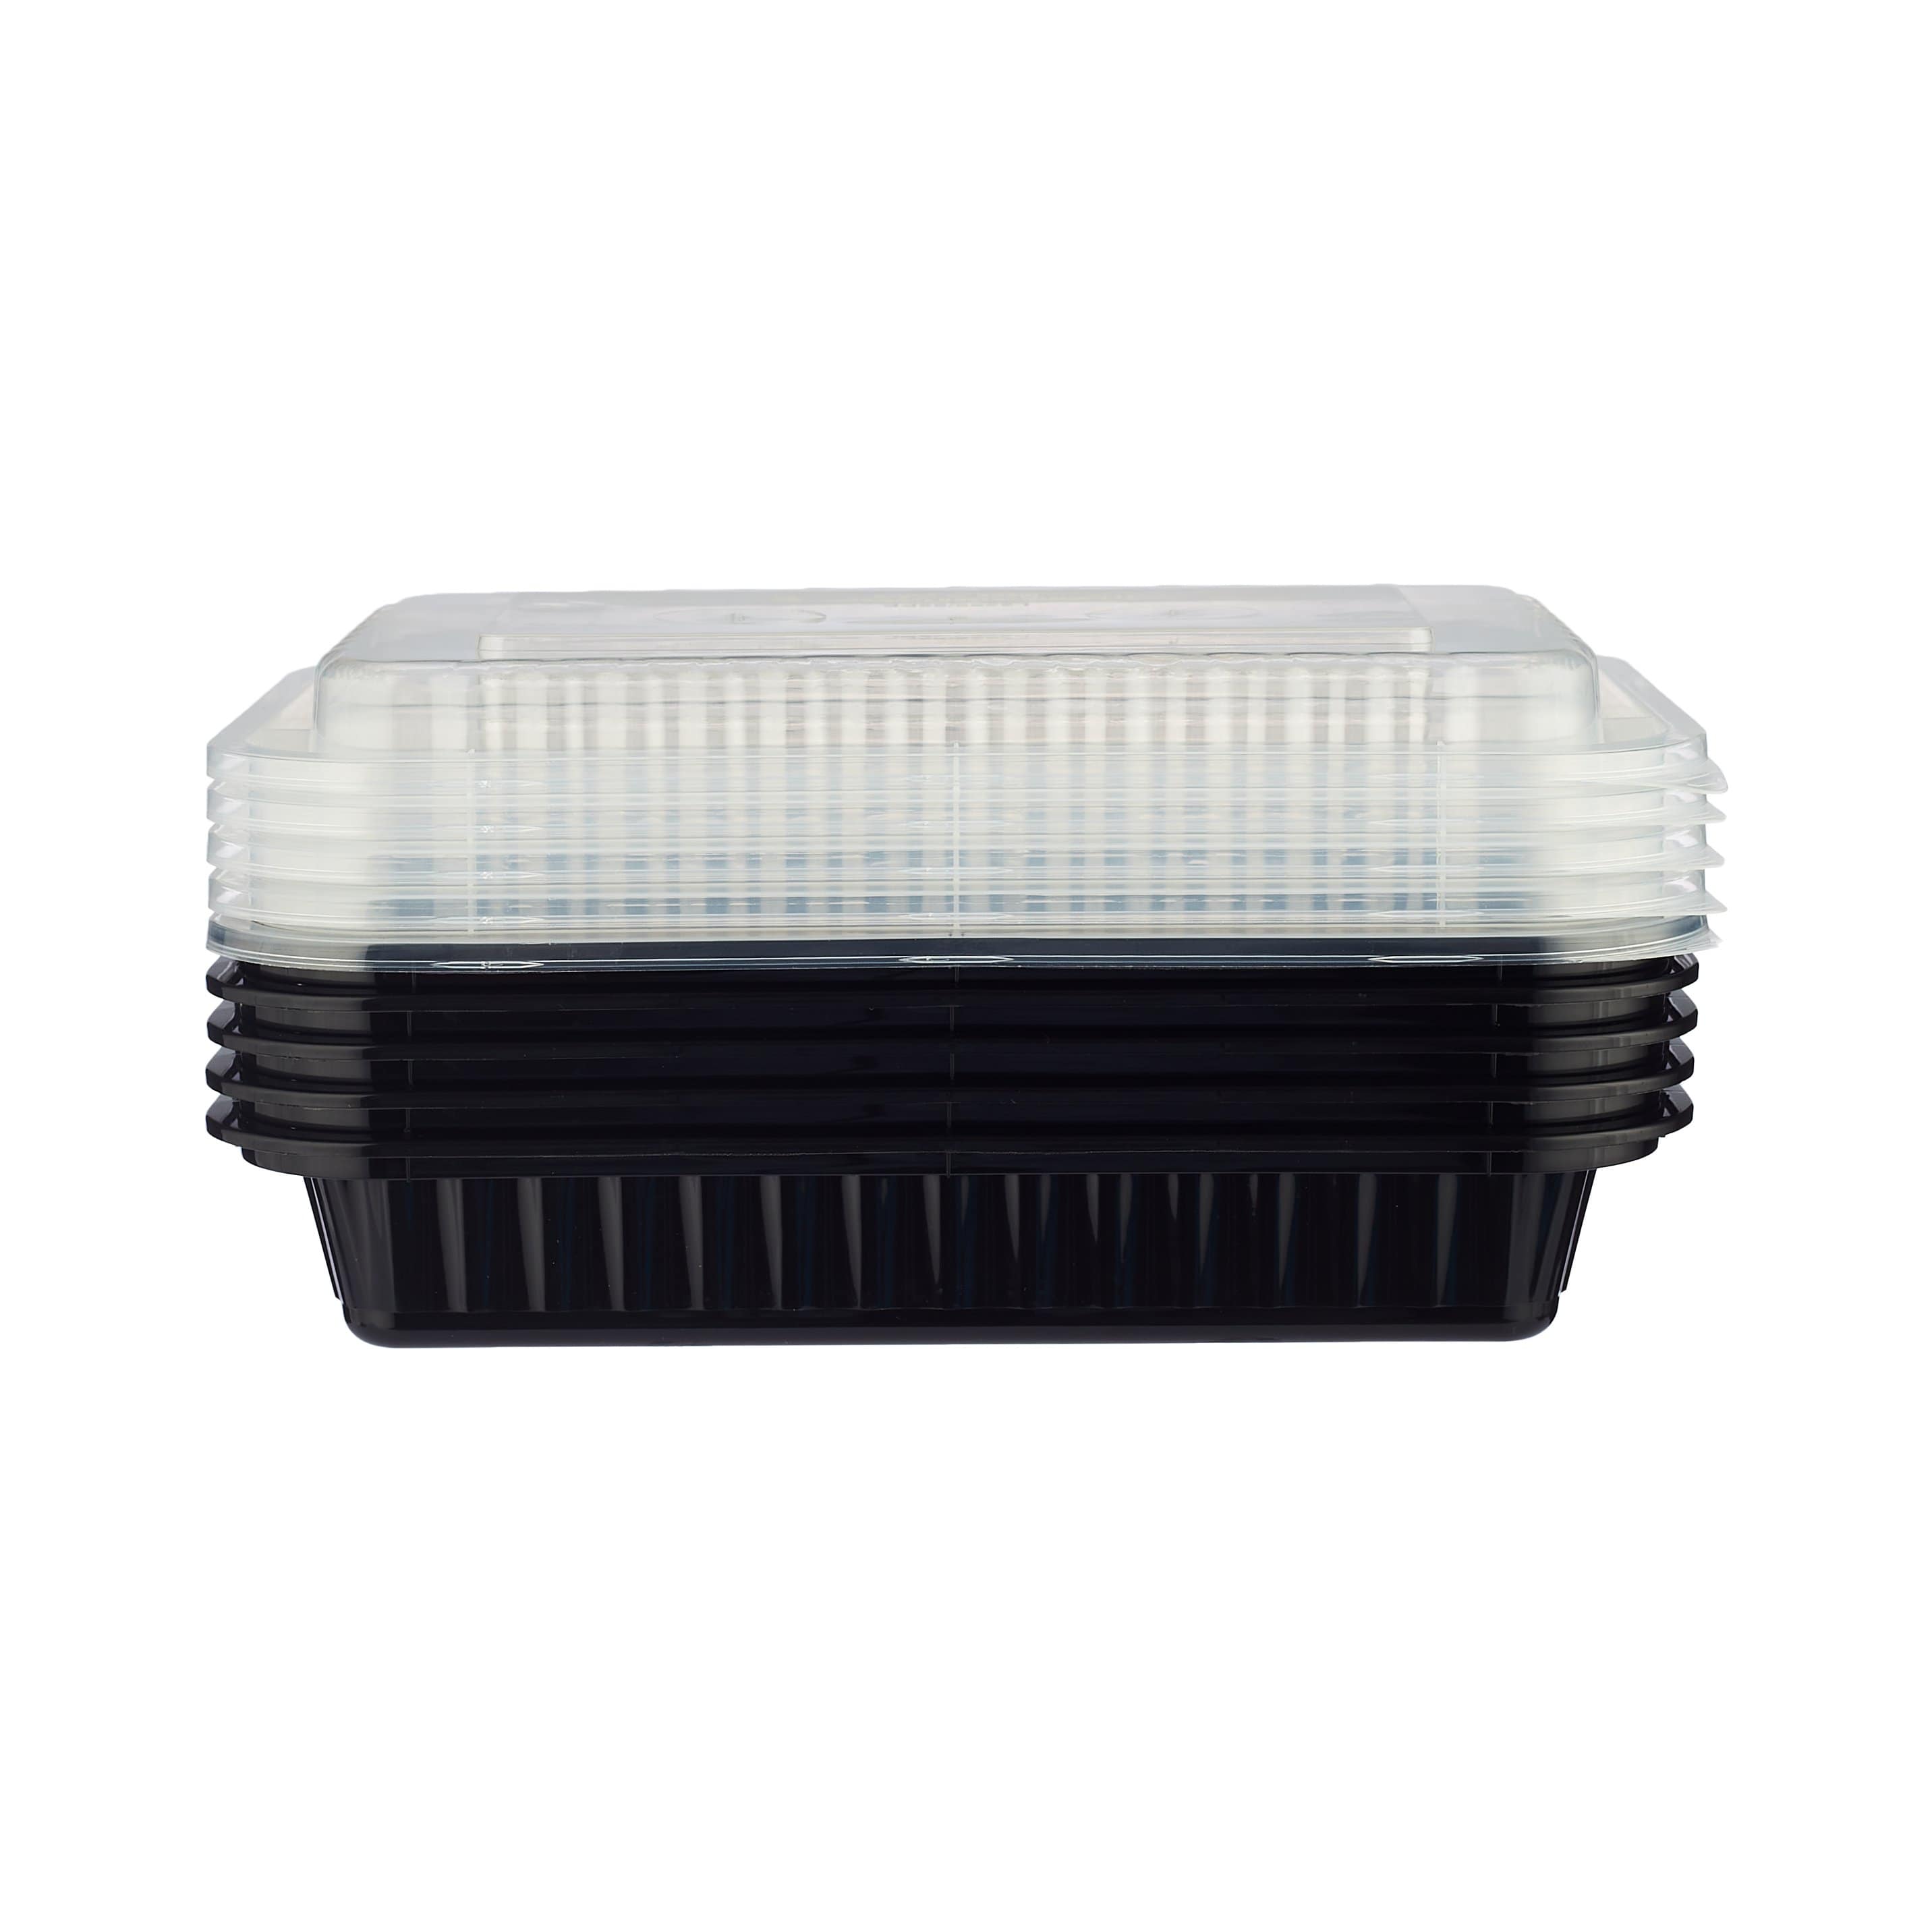 AHD Rectangular Black Plastic Container Set 28 oz. (006) - 150/Case 